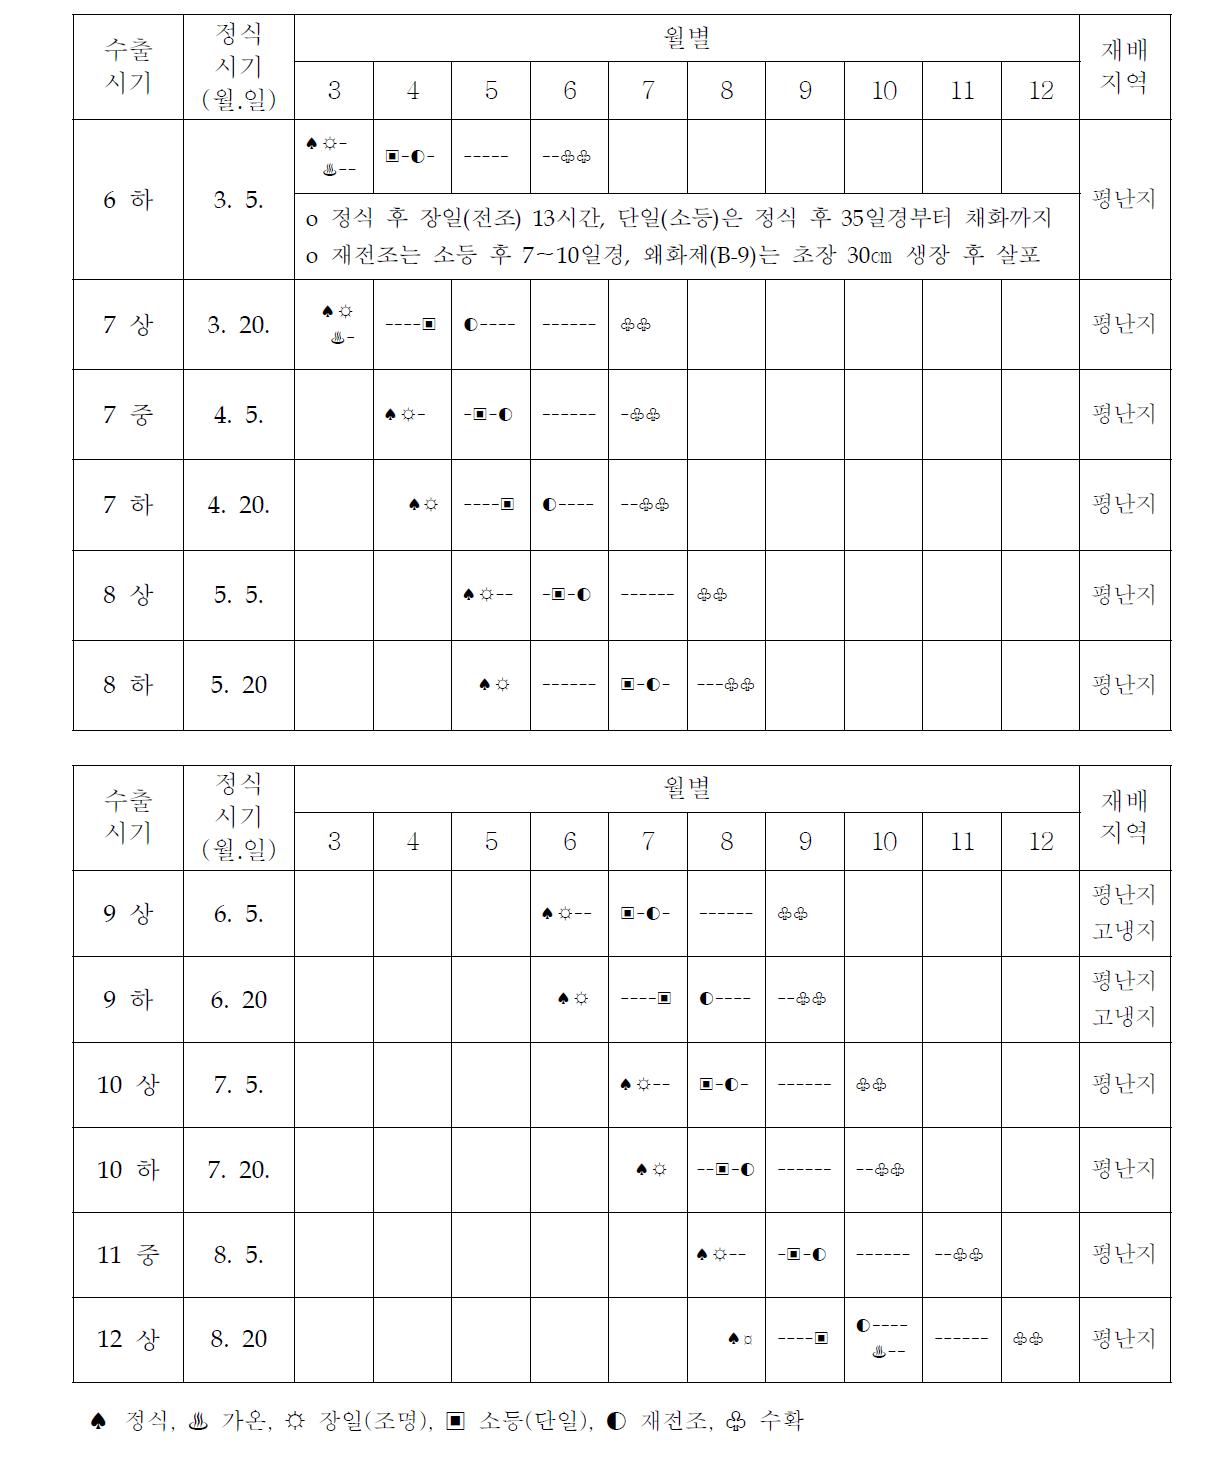 국산국화 ‘백마’ 수출시기별 재배작형 모식도 (2차년도, 2013)